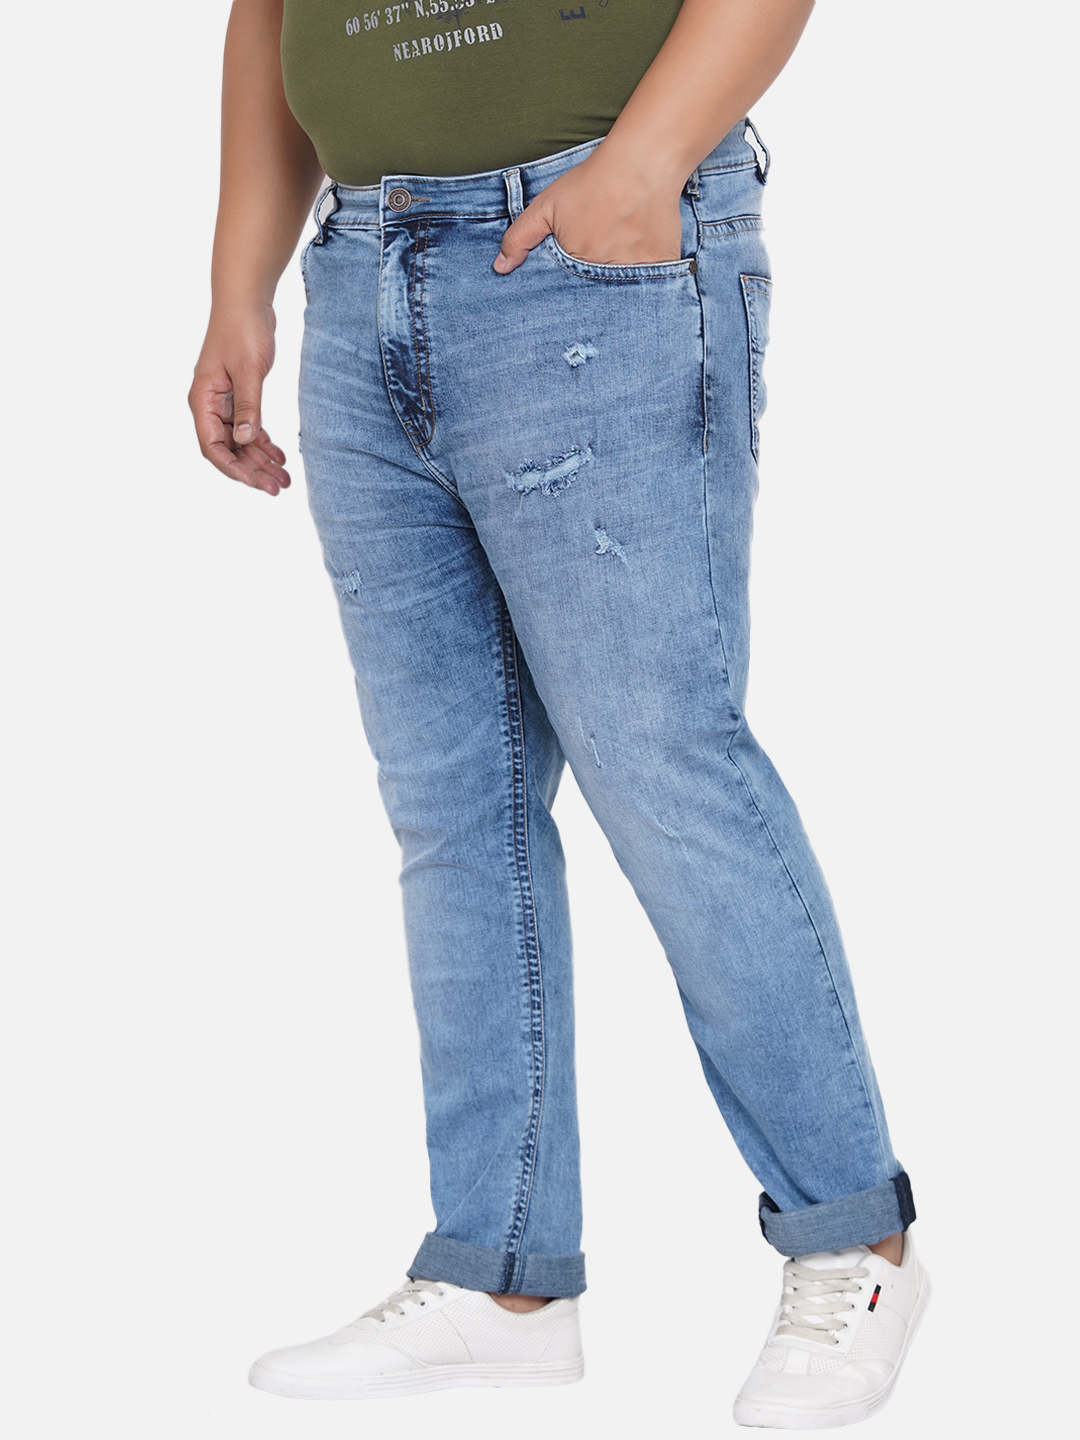 bottomwear/jeans/JPJ12200/jpj12200-4.jpg